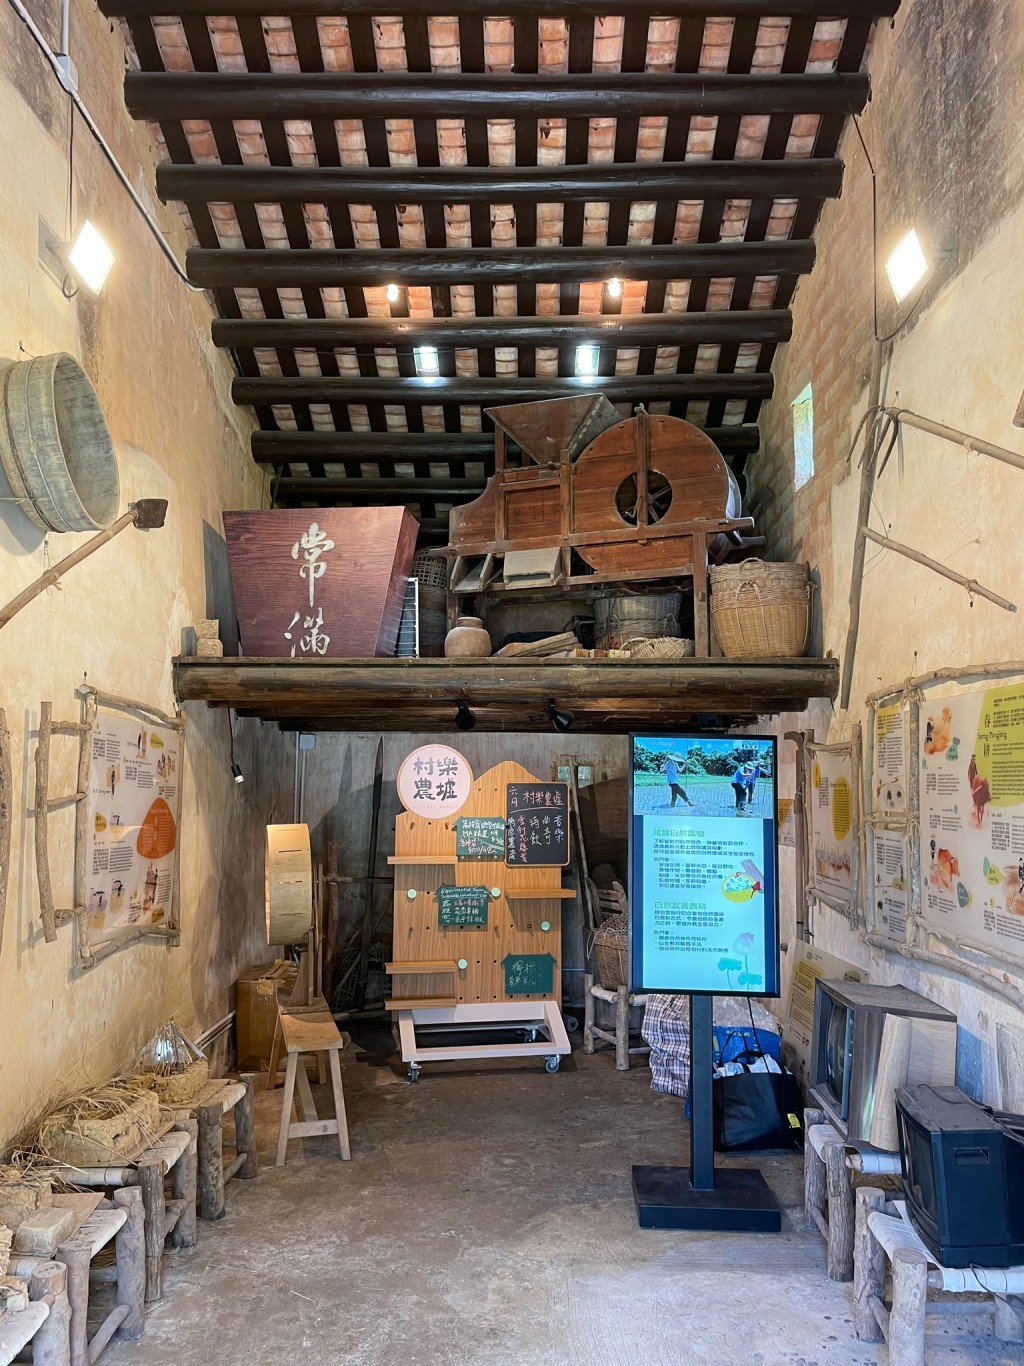 黃曉綿同學所參觀的故事館，了解到不少傳統客家的人文文化及歷史。